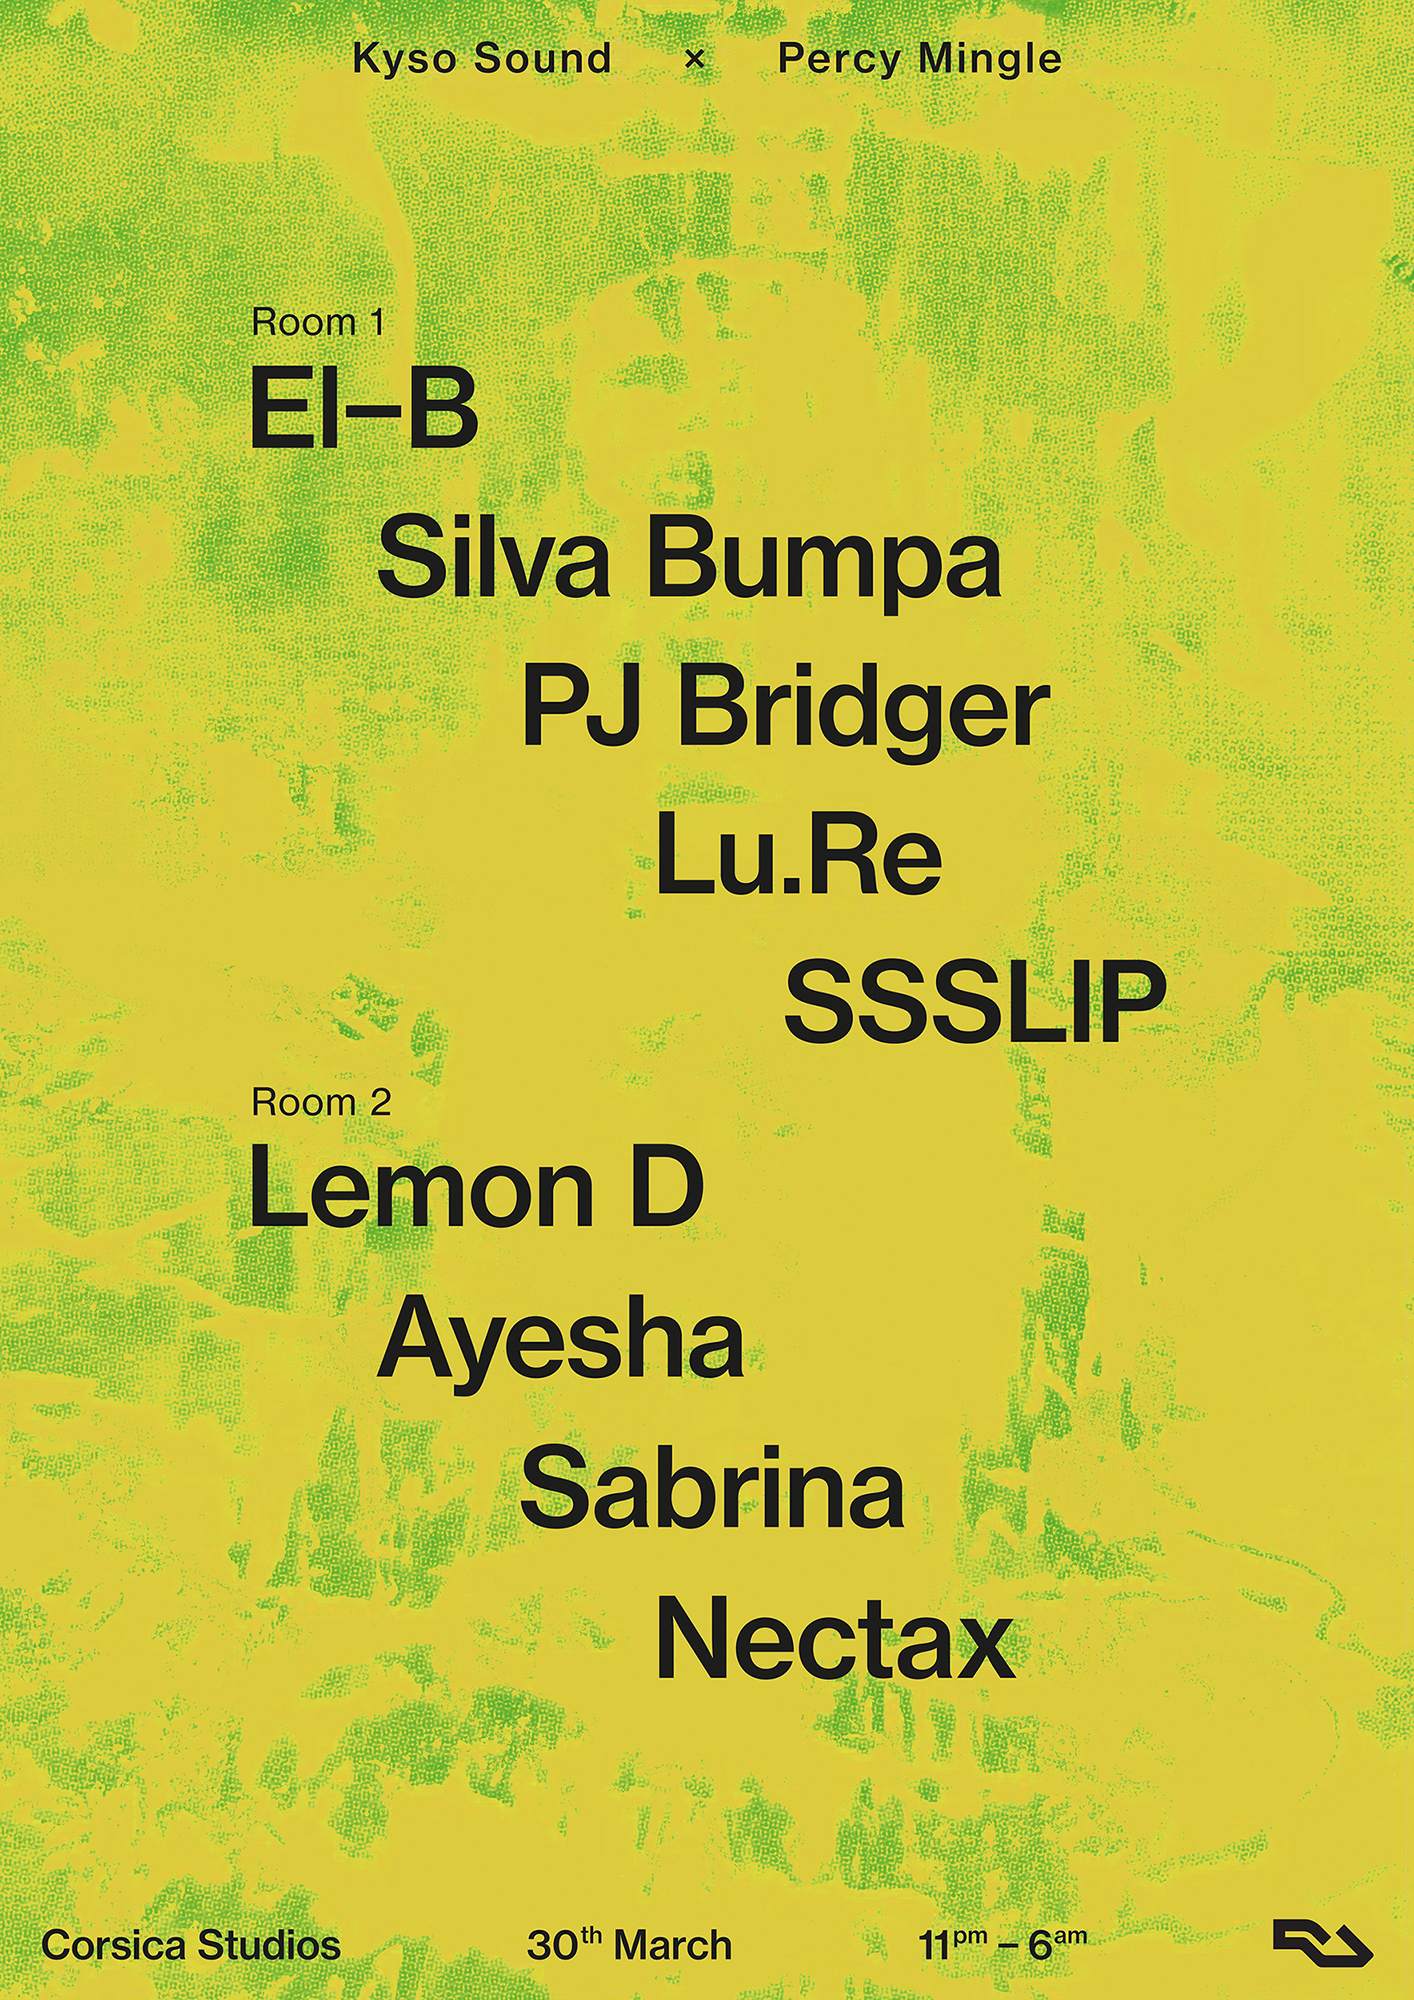 KYSO & Percy Mingle -  El-B, Lemon D, Silva Bumpa, Ayesha, PJ Bridger, Lu.Re, Nectax, Sabrina - フライヤー表